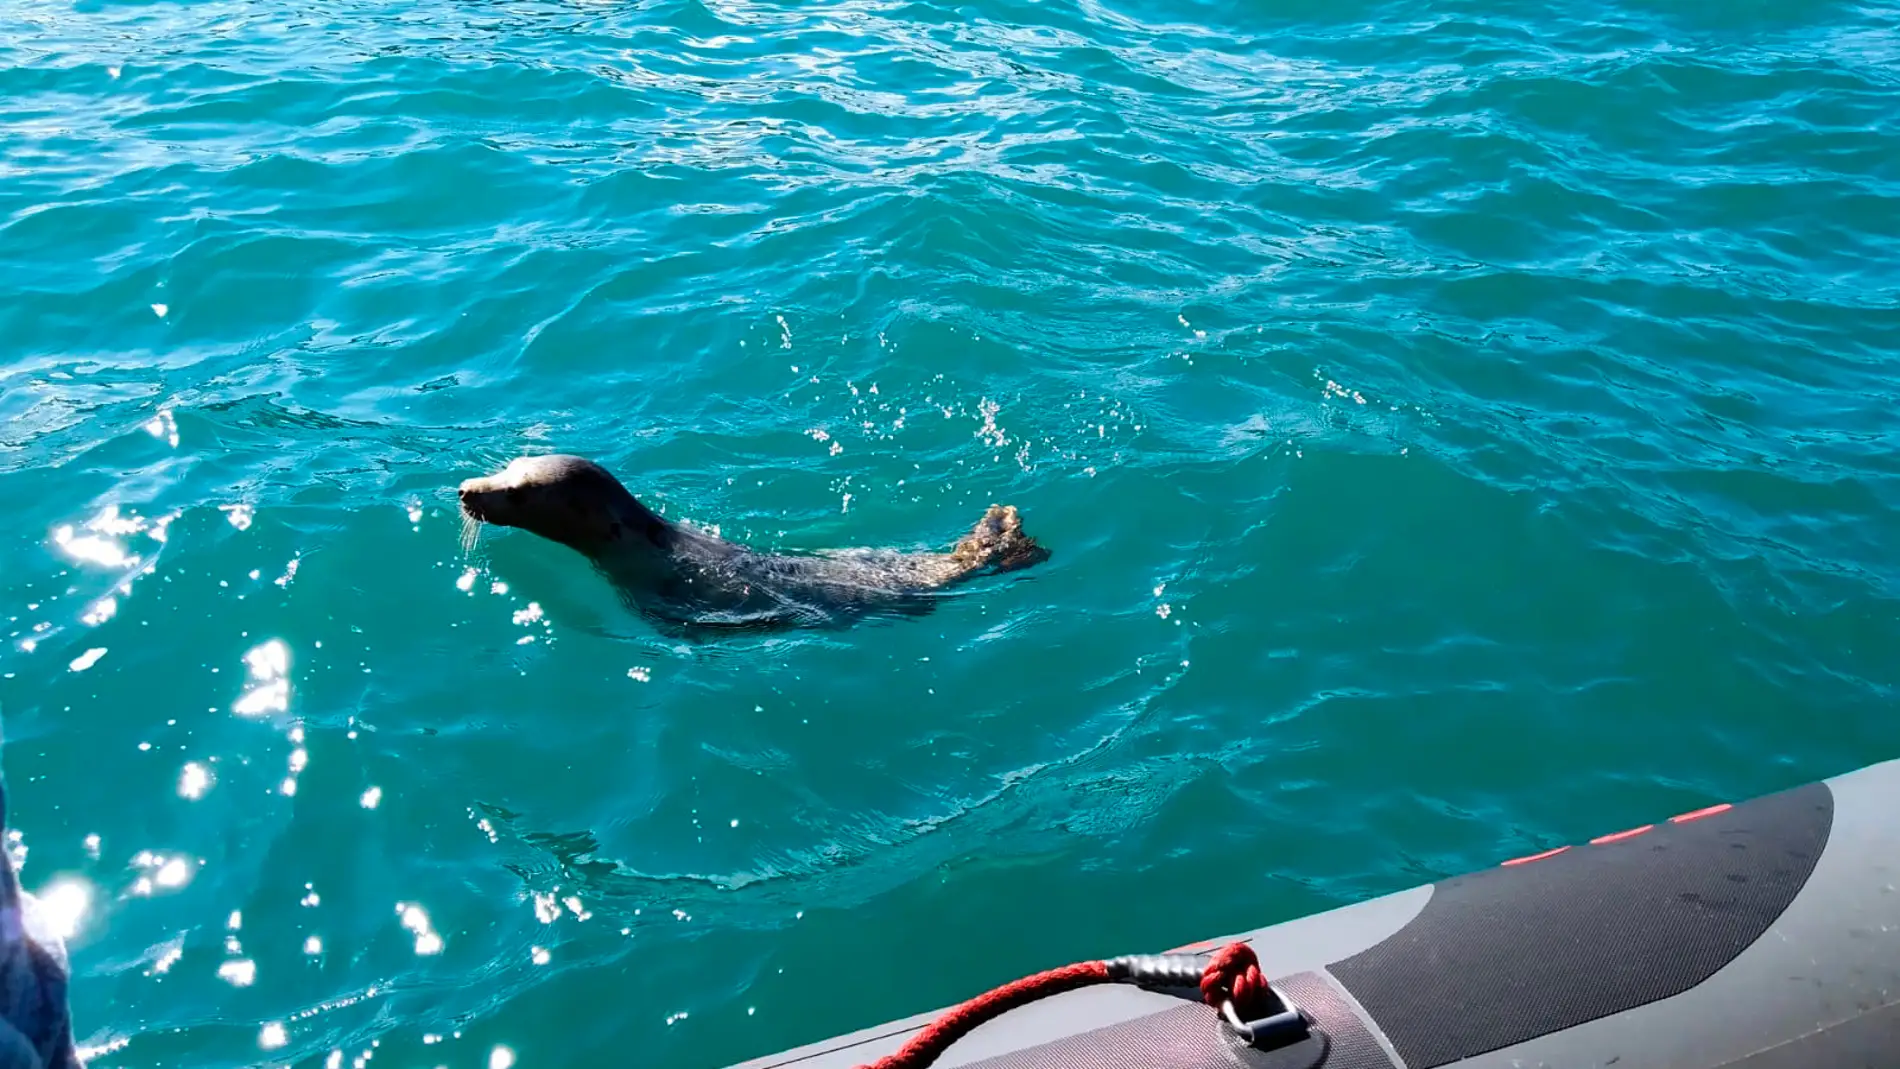 Reintroducida la foca gris localizada hace dos meses en Gijón